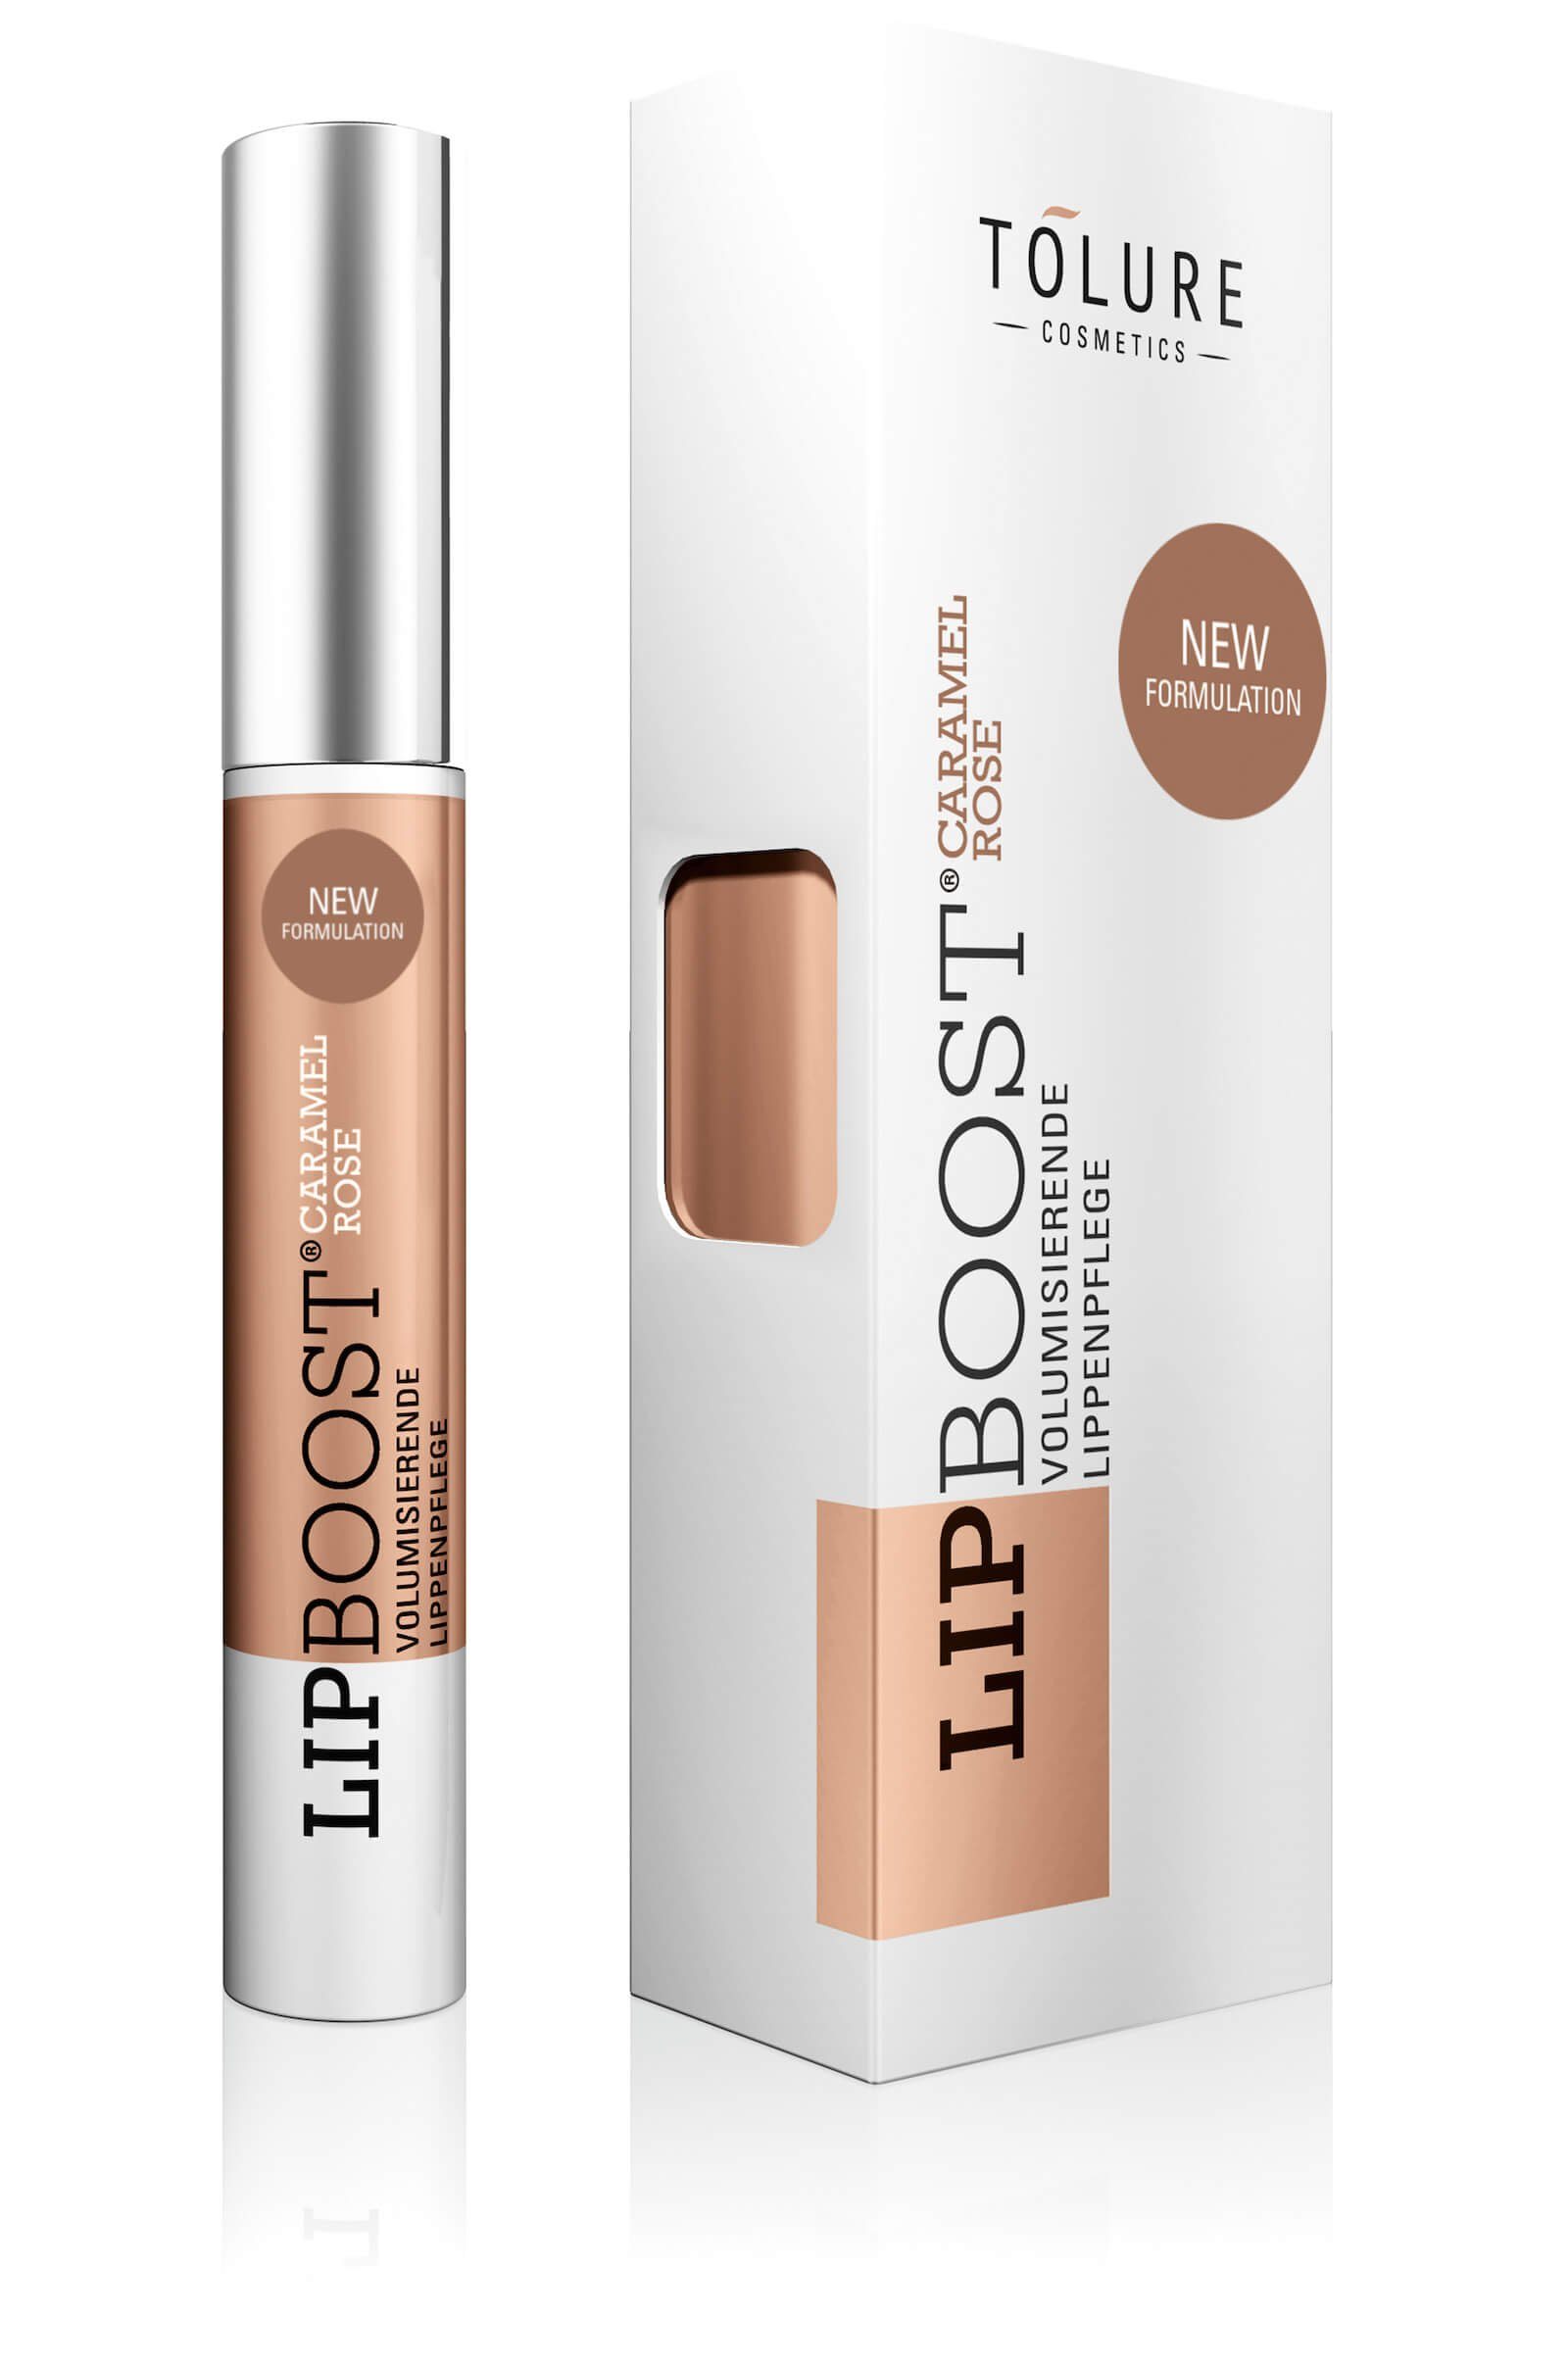 Rabatt Tolure Lipgloss LIPBOOST® New Formulation, rasche caramel-rosé Zunahme des Lippenvolumens für eine